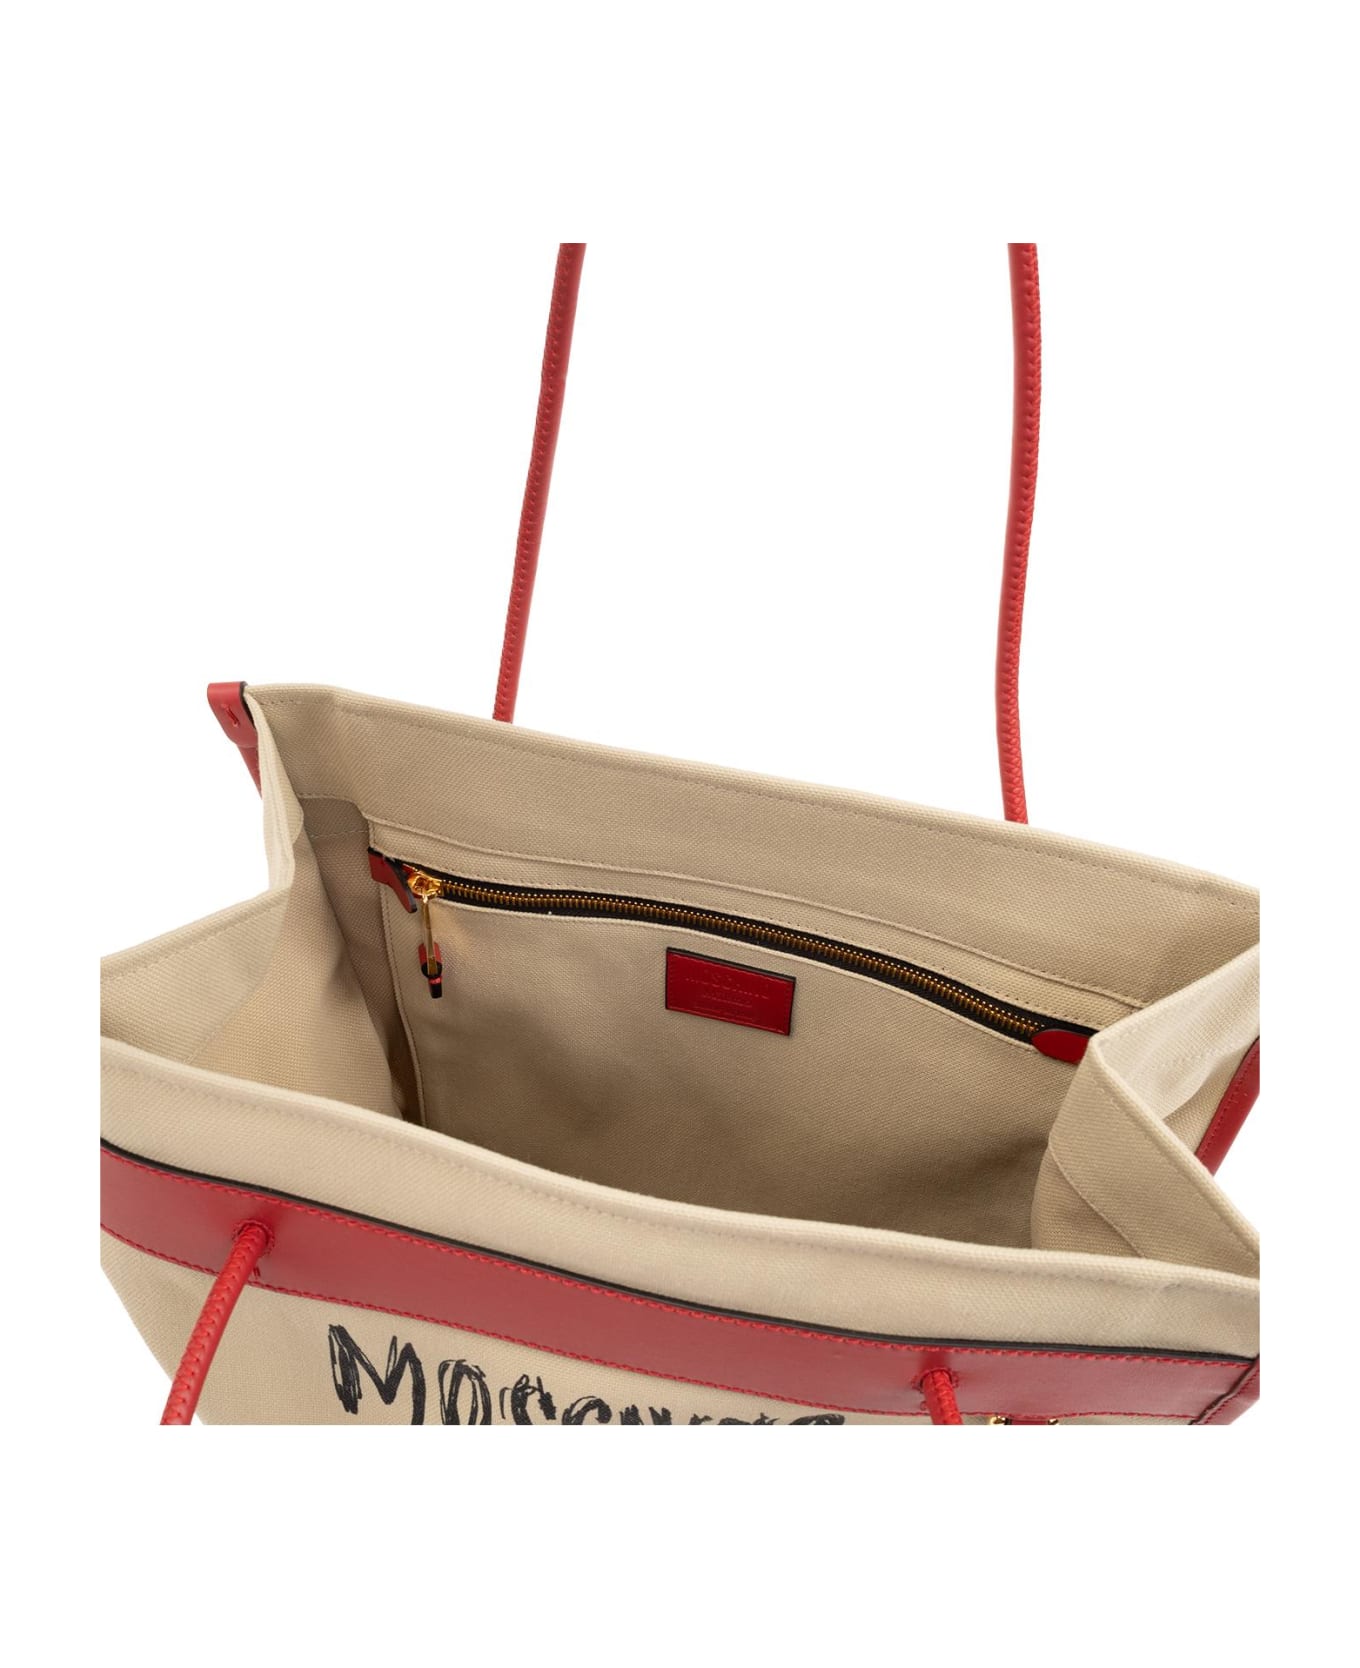 Moschino Shopper Bag - Beige トートバッグ